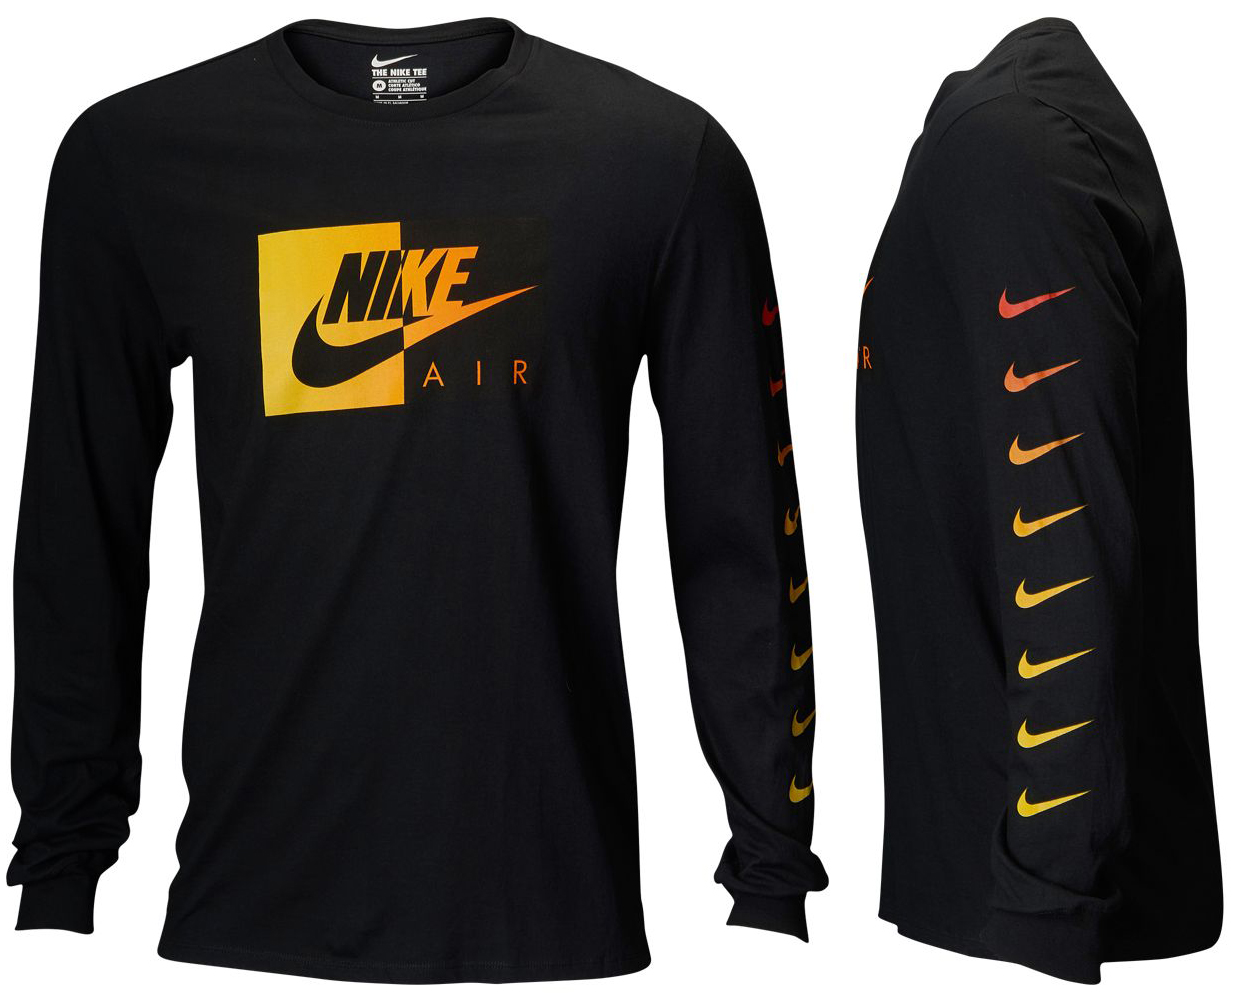 Nike Air Max Plus Mercurial Shirt Match 